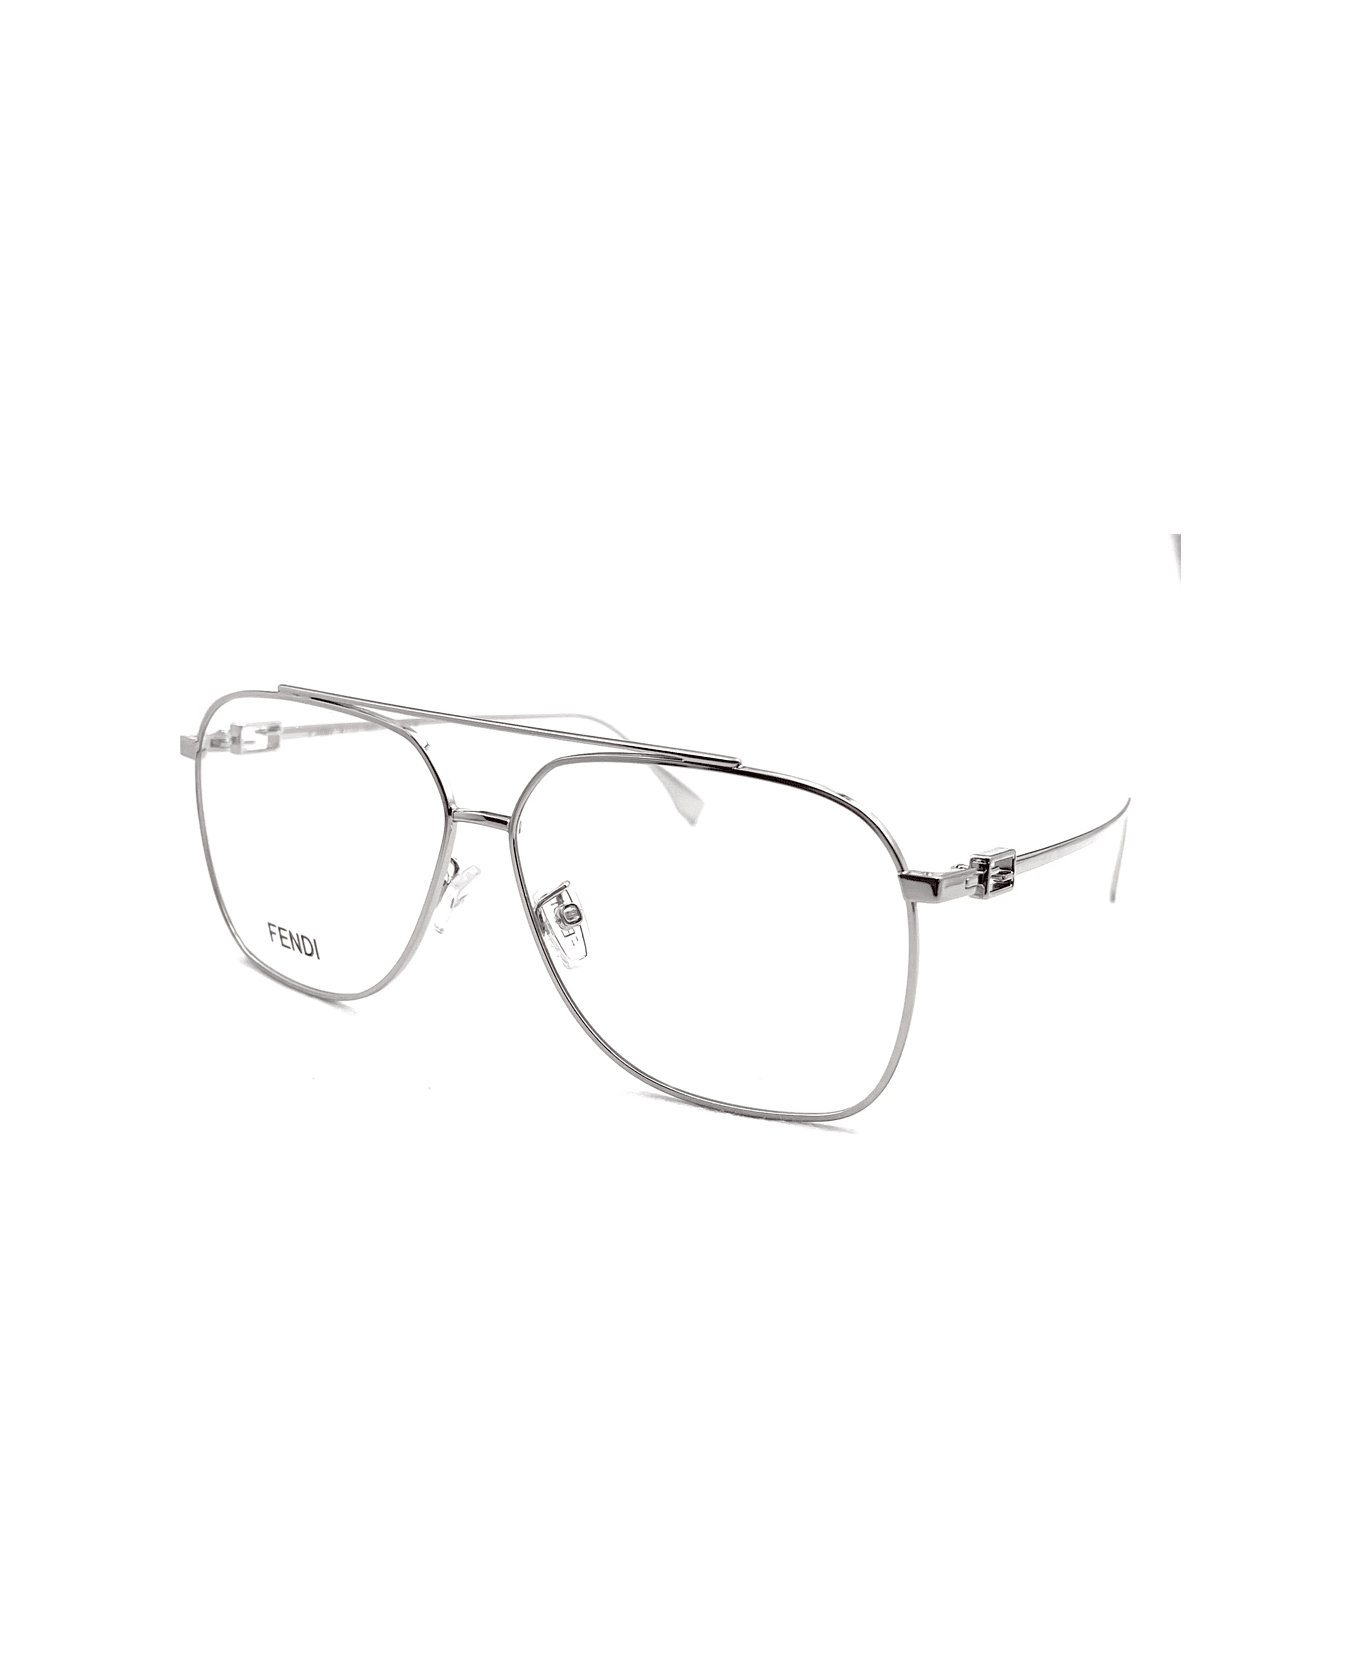 Fendi Eyewear Fe50083u 016 Glasses - Argento アイウェア